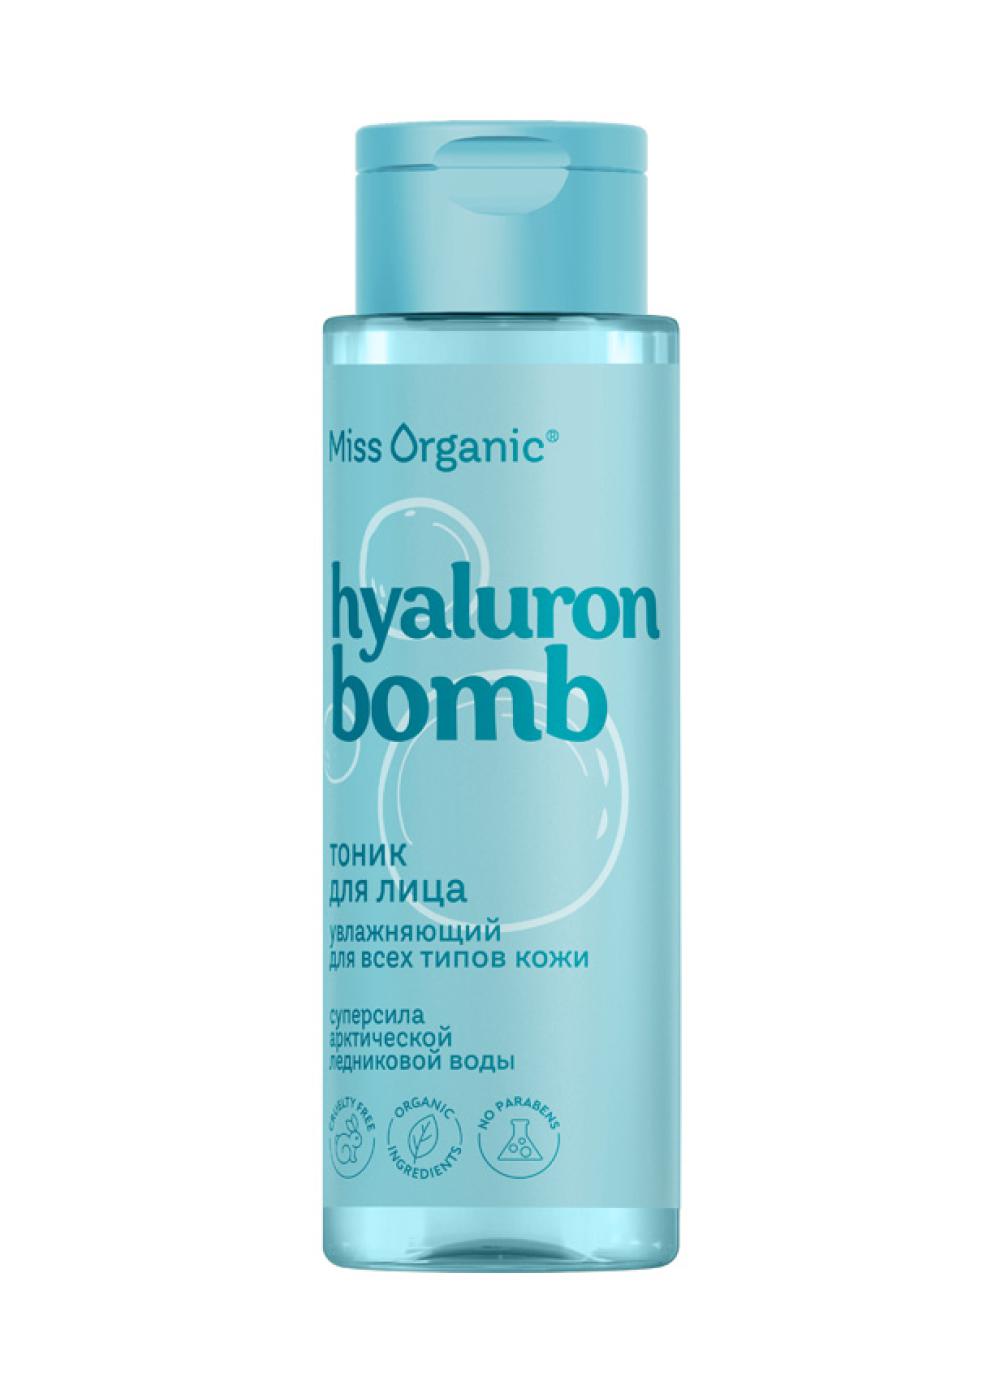 Увлажняющий Тоник для лица для всех типов кожи Hyaluron Bomb, Miss Organic, 200 руб. (Ozon)